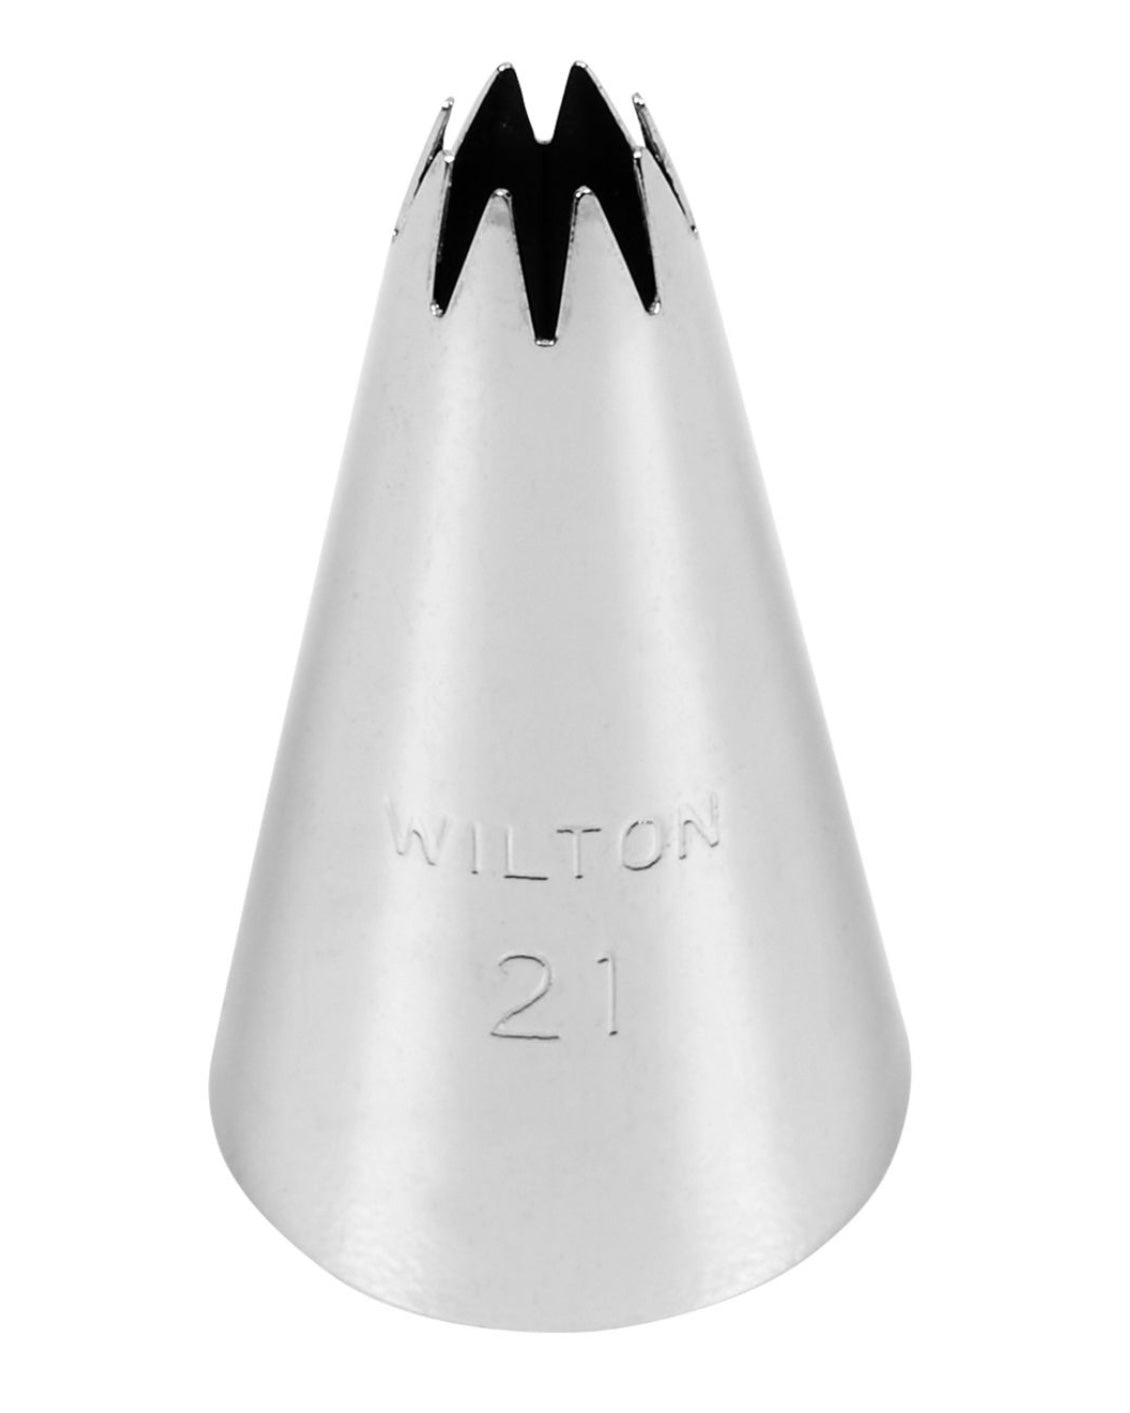 Wilton 21 kleine Tülle